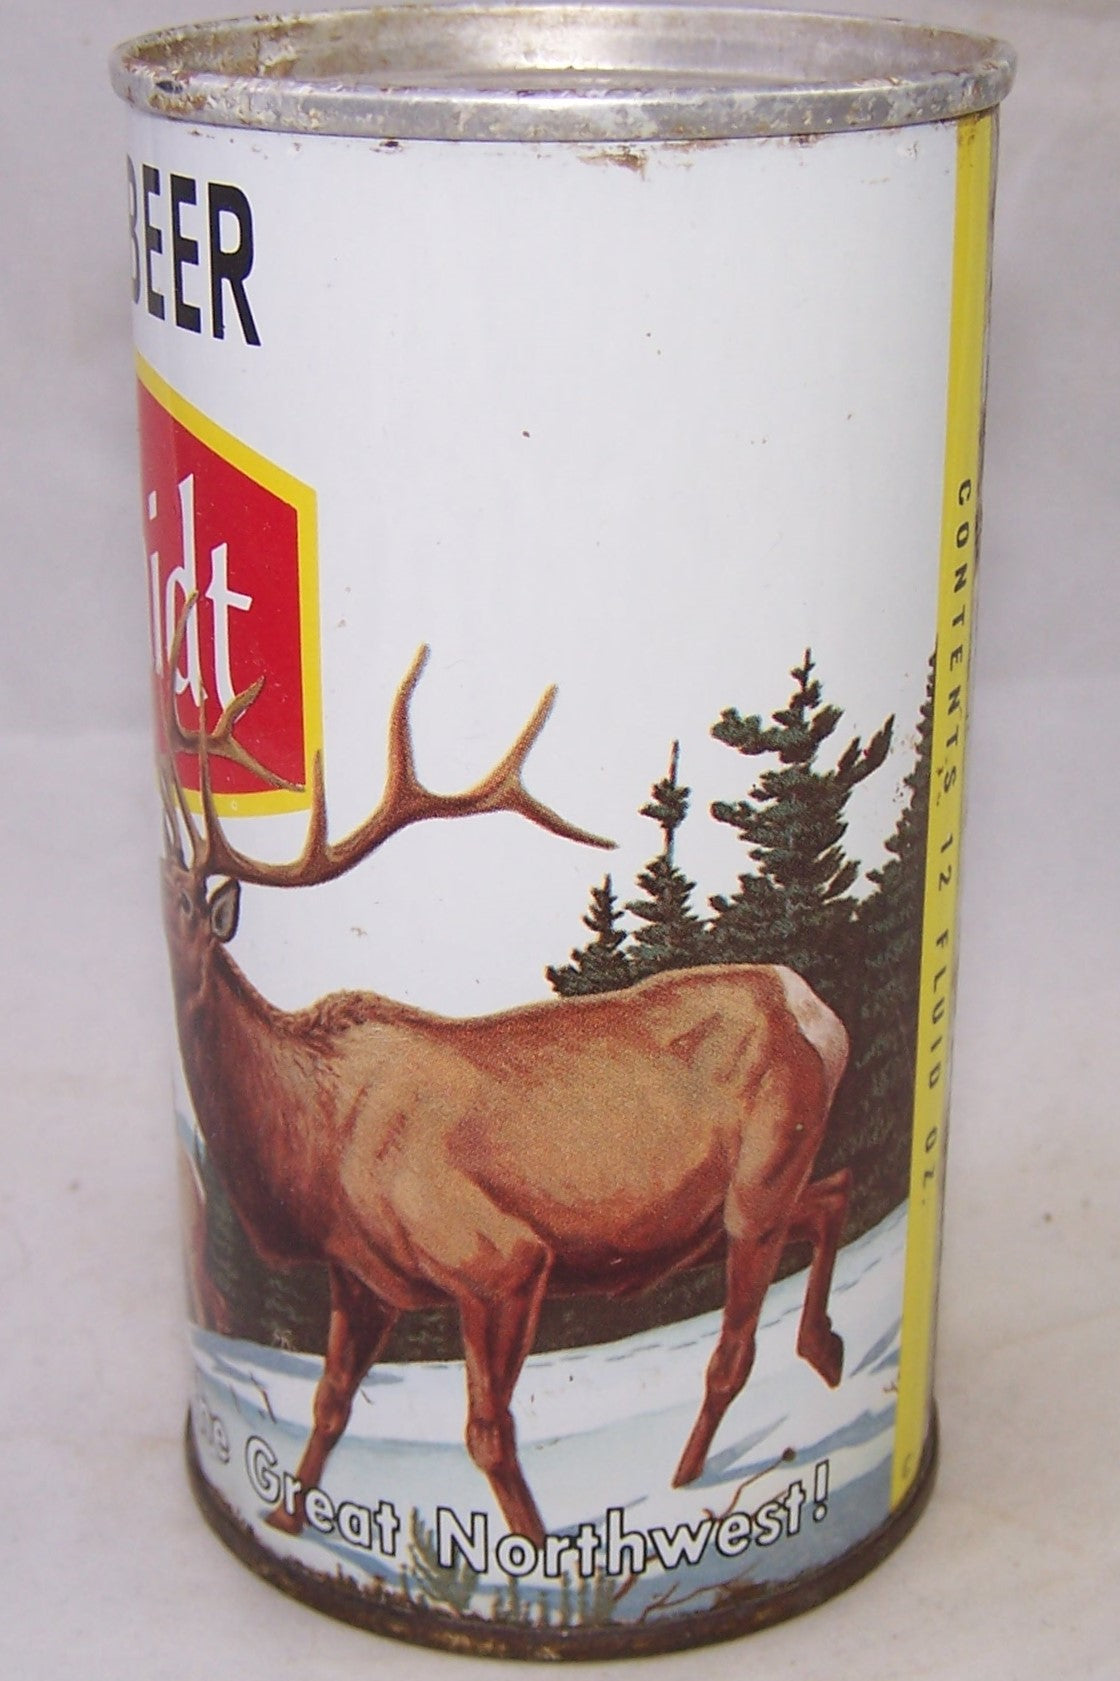 Schmidt Draft Beer (Elk) USBC II 202-10, Grade 1/1-